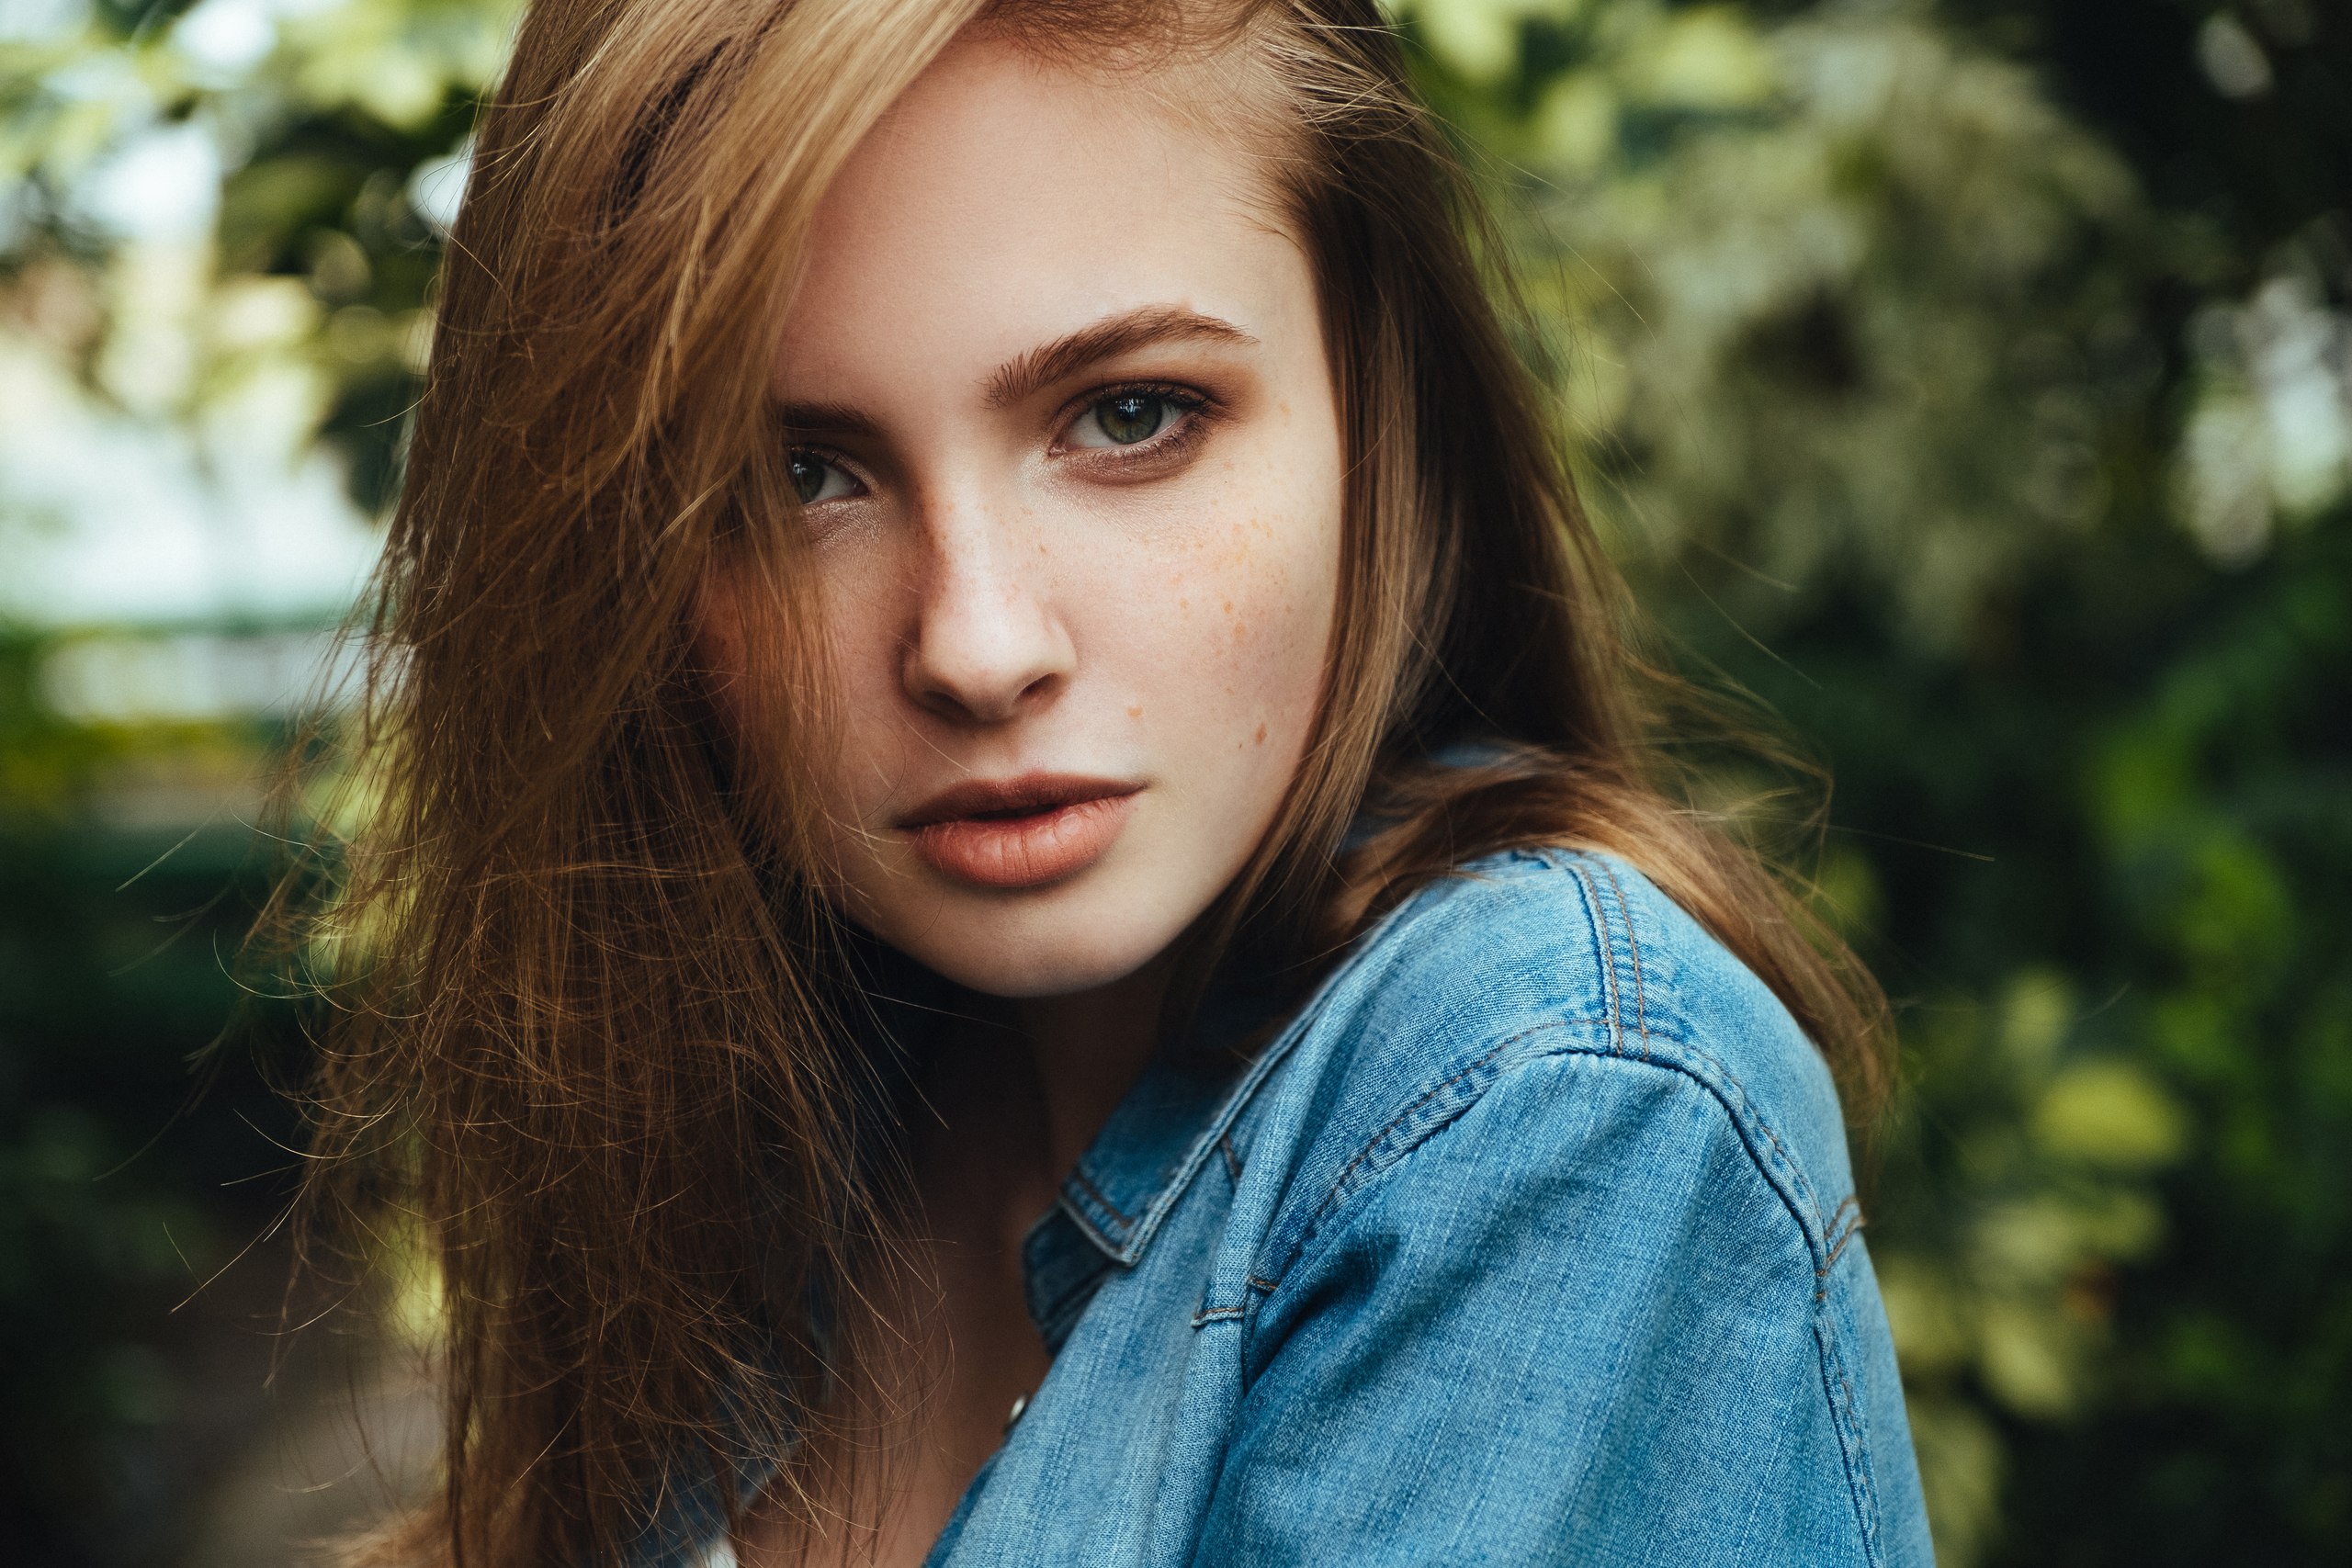 Women Face Portrait Women Outdoors Denim Shirt Jeans Shirt Green Eyes Closeup Hair In Face Model Bru 2560x1707